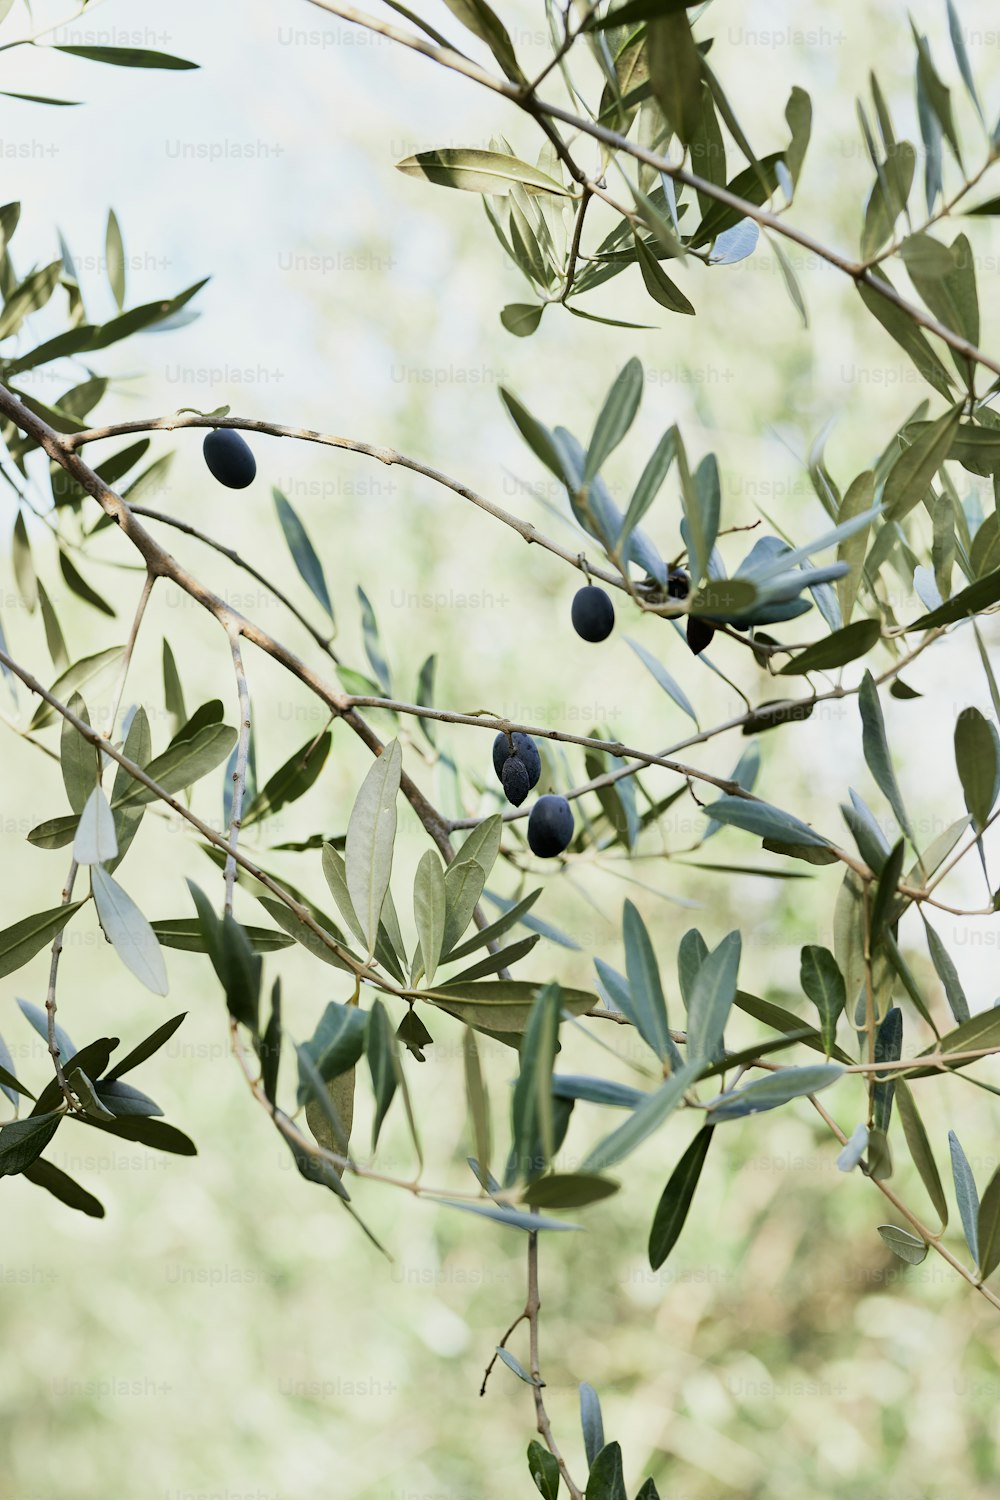 un olivo con hojas verdes y bayas azules